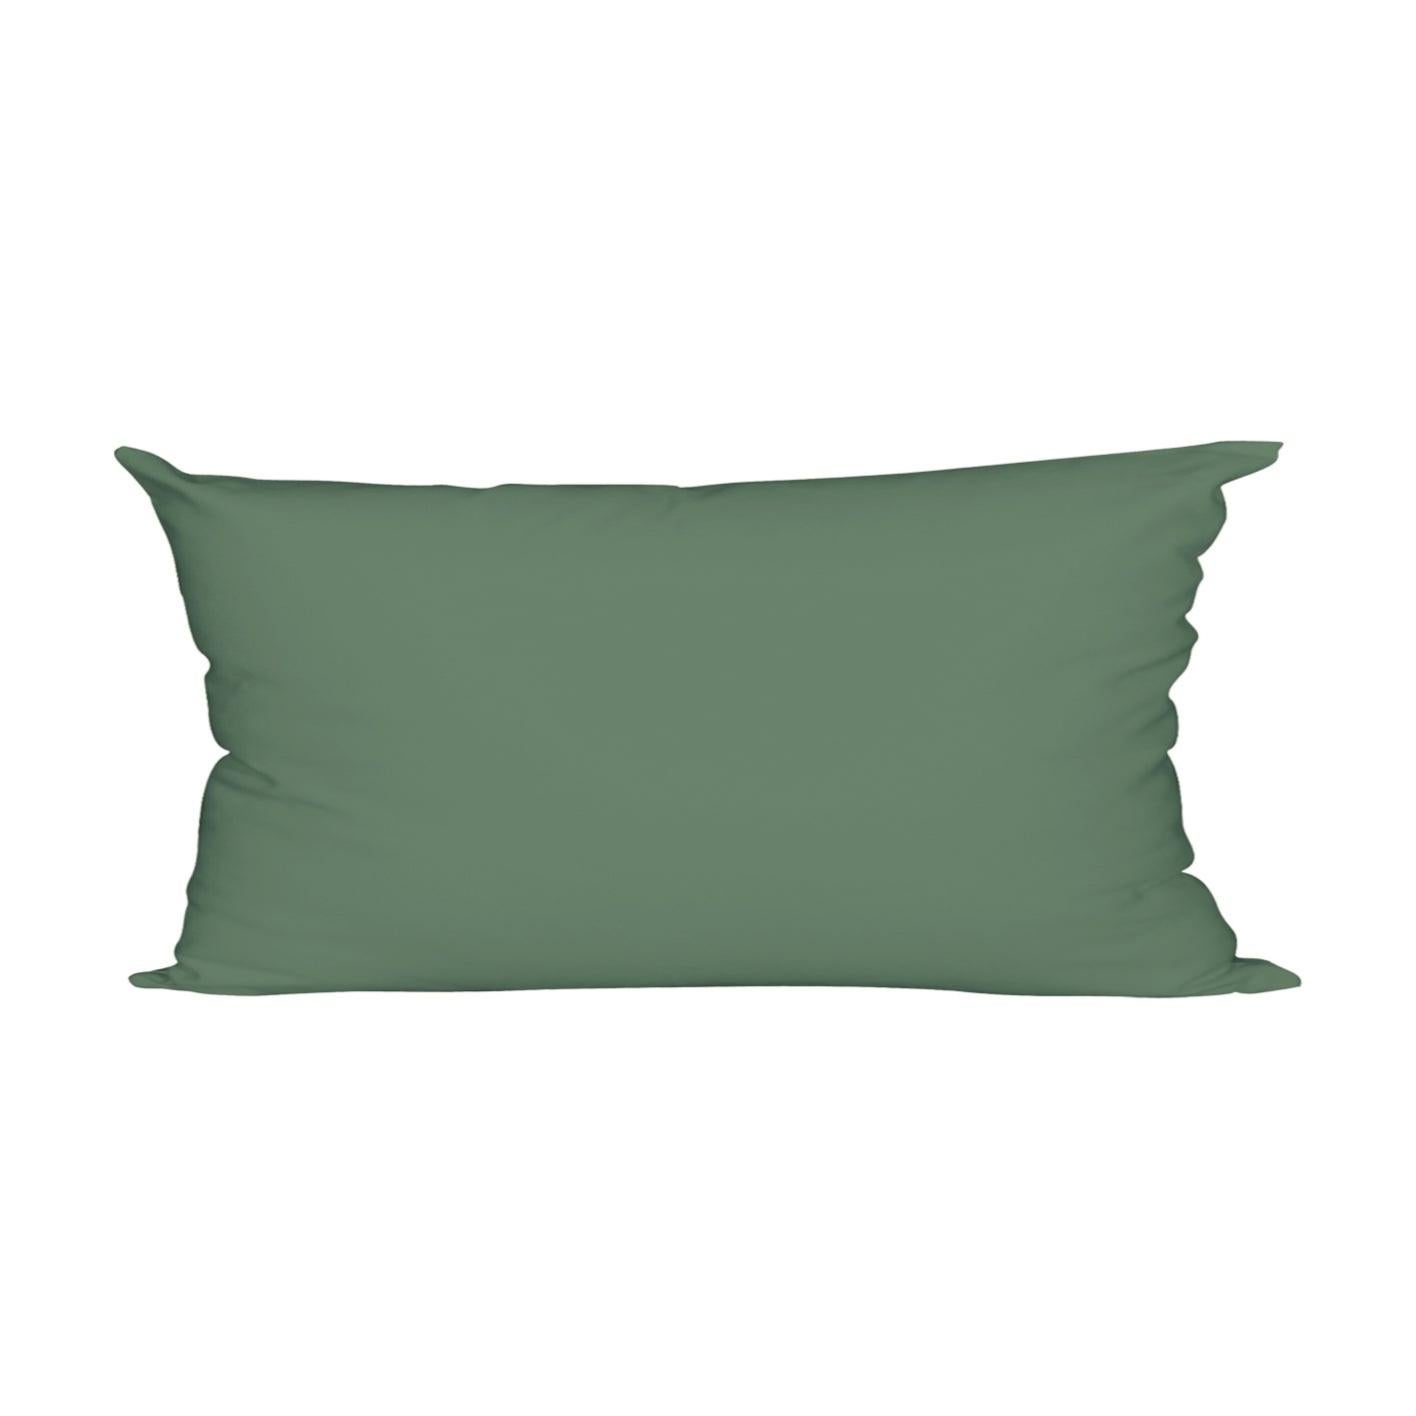 Fodera per cuscino per interni Insence verde 45x45 cm